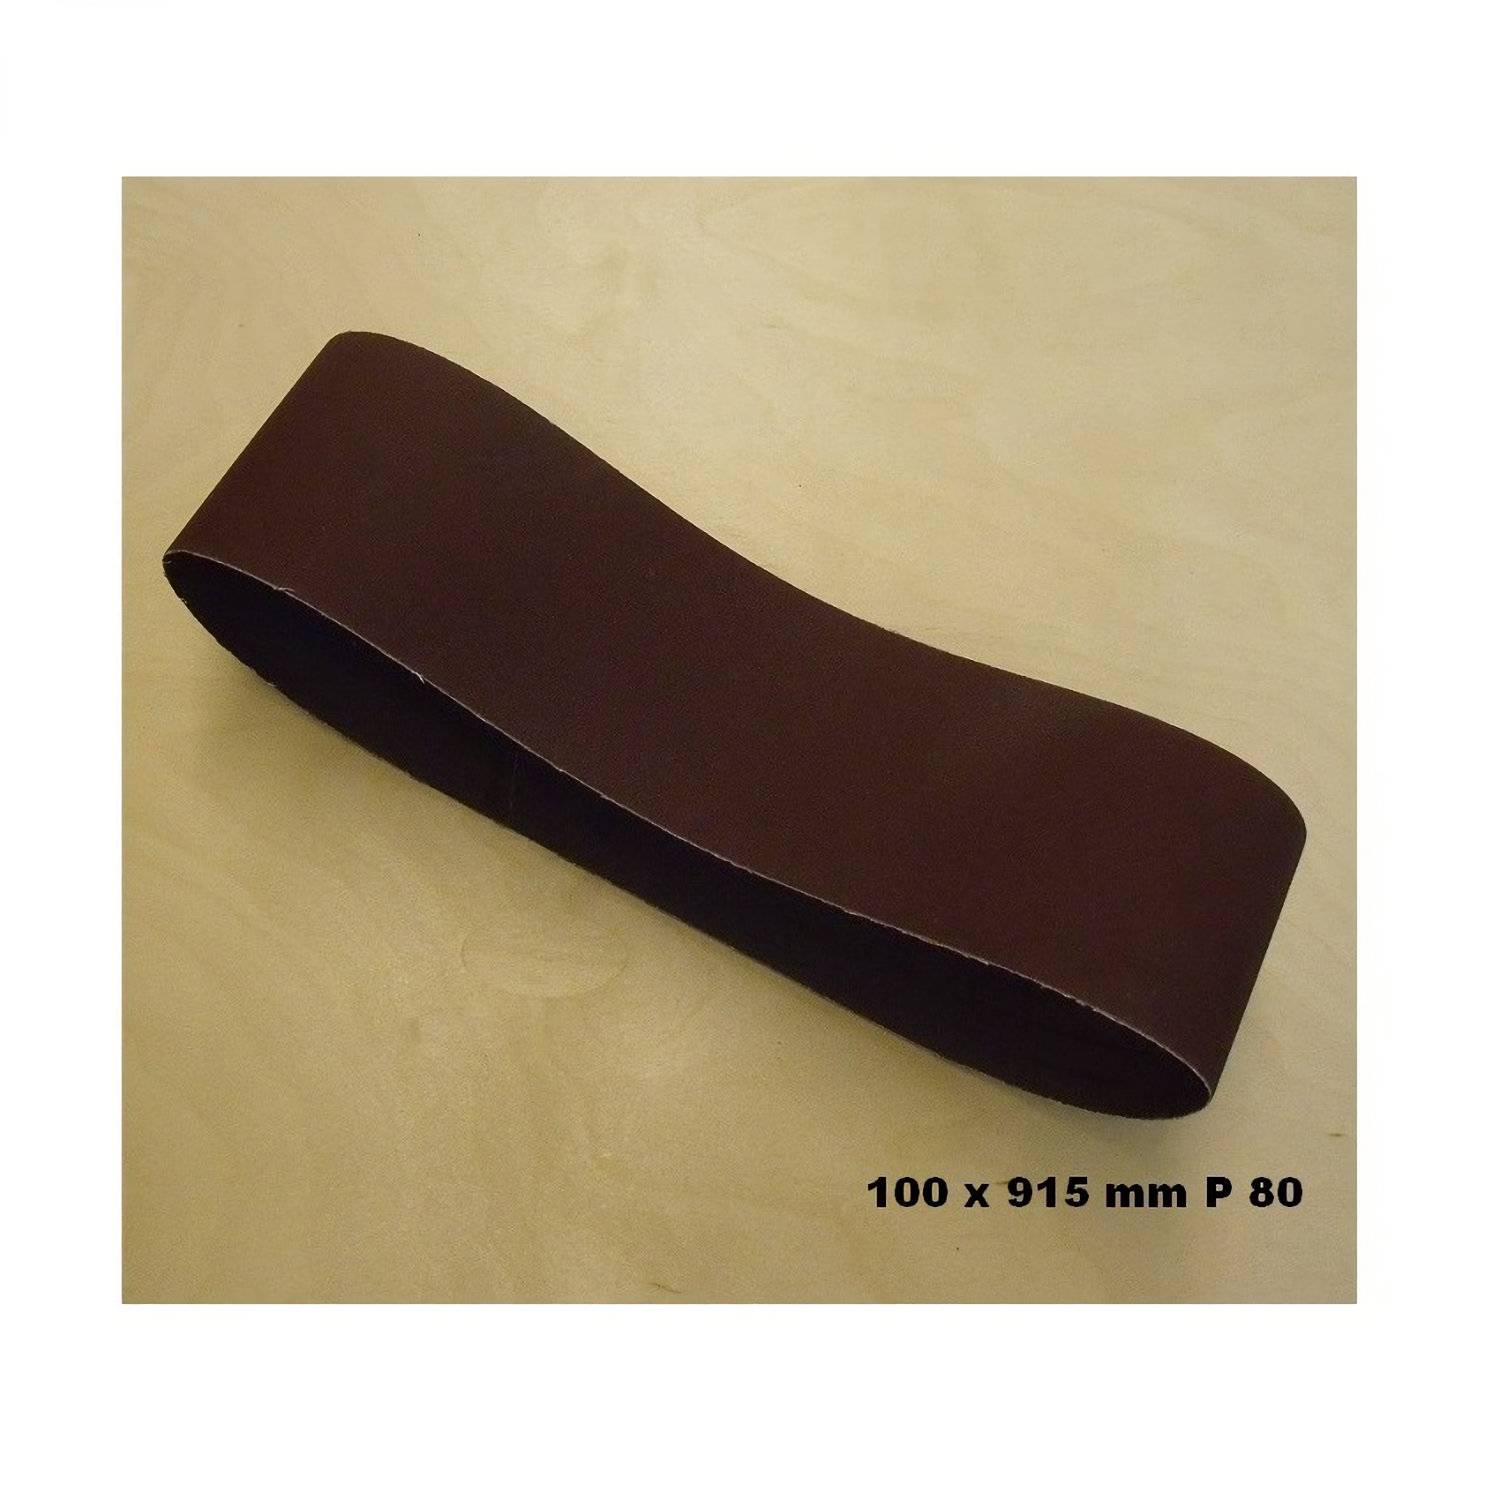 Schuurband 100 x 915 mm P 80 -